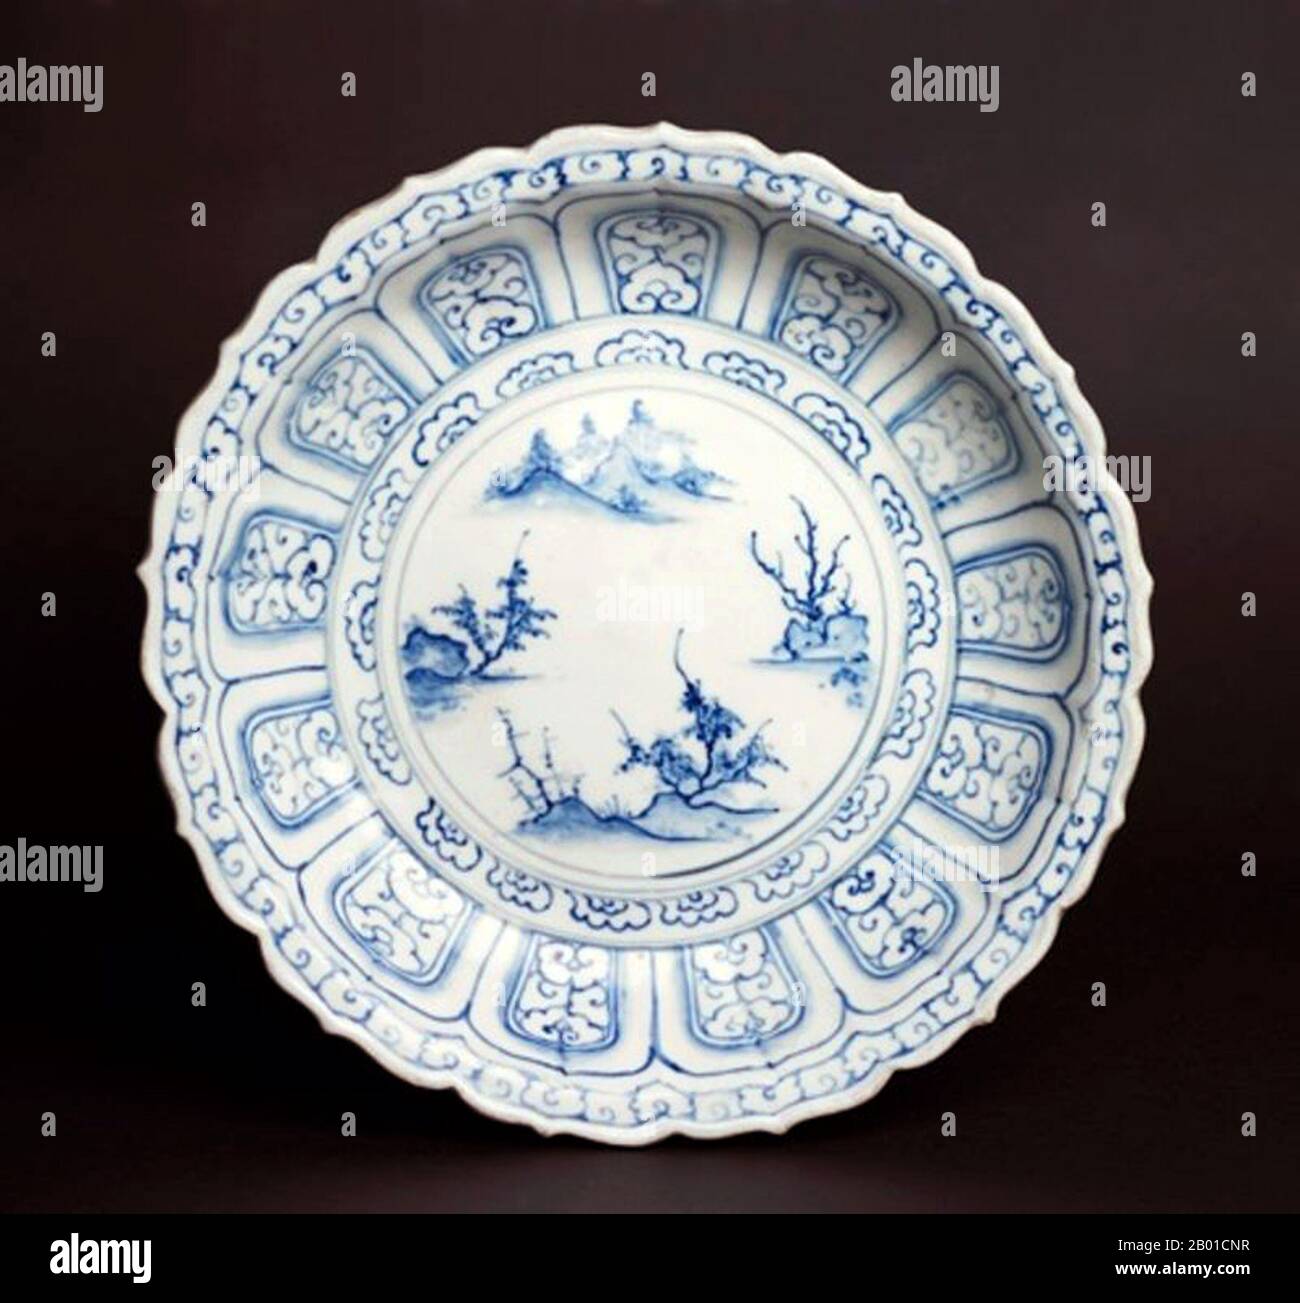 Vietnam: Quattro Isola piastra. Successivamente la dinastia Lê (1533-1788). Bát Tràng porcellana e ceramica è un tipo di ceramica fatta nel villaggio di Bát Tràng, nella periferia periferica della città settentrionale vietnamita di Hanoi. Il paese si trova in una zona ricca di argilla adatta per la produzione di ceramiche fini. Le ceramiche di Bát Tràng sono considerate alcuni dei prodotti di porcellana più conosciuti in Vietnam oltre a quelli di Chu Đậu, Đồng Nai, Phu Lang e Ninh Thuận. Foto Stock